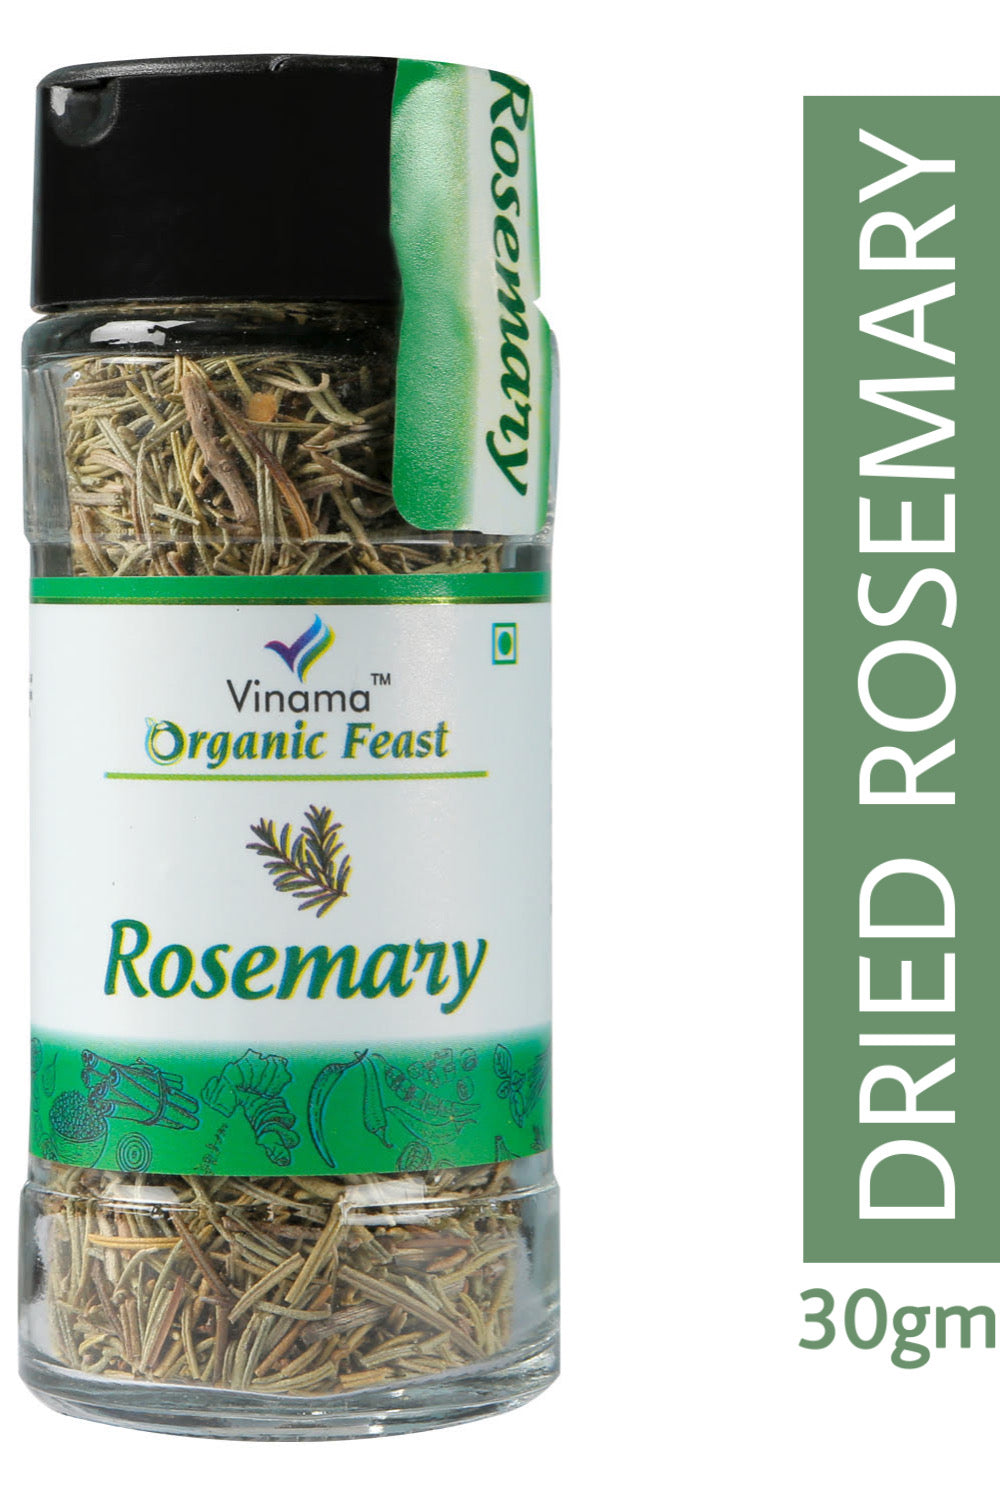 Vinama Organic Feast Rosemary